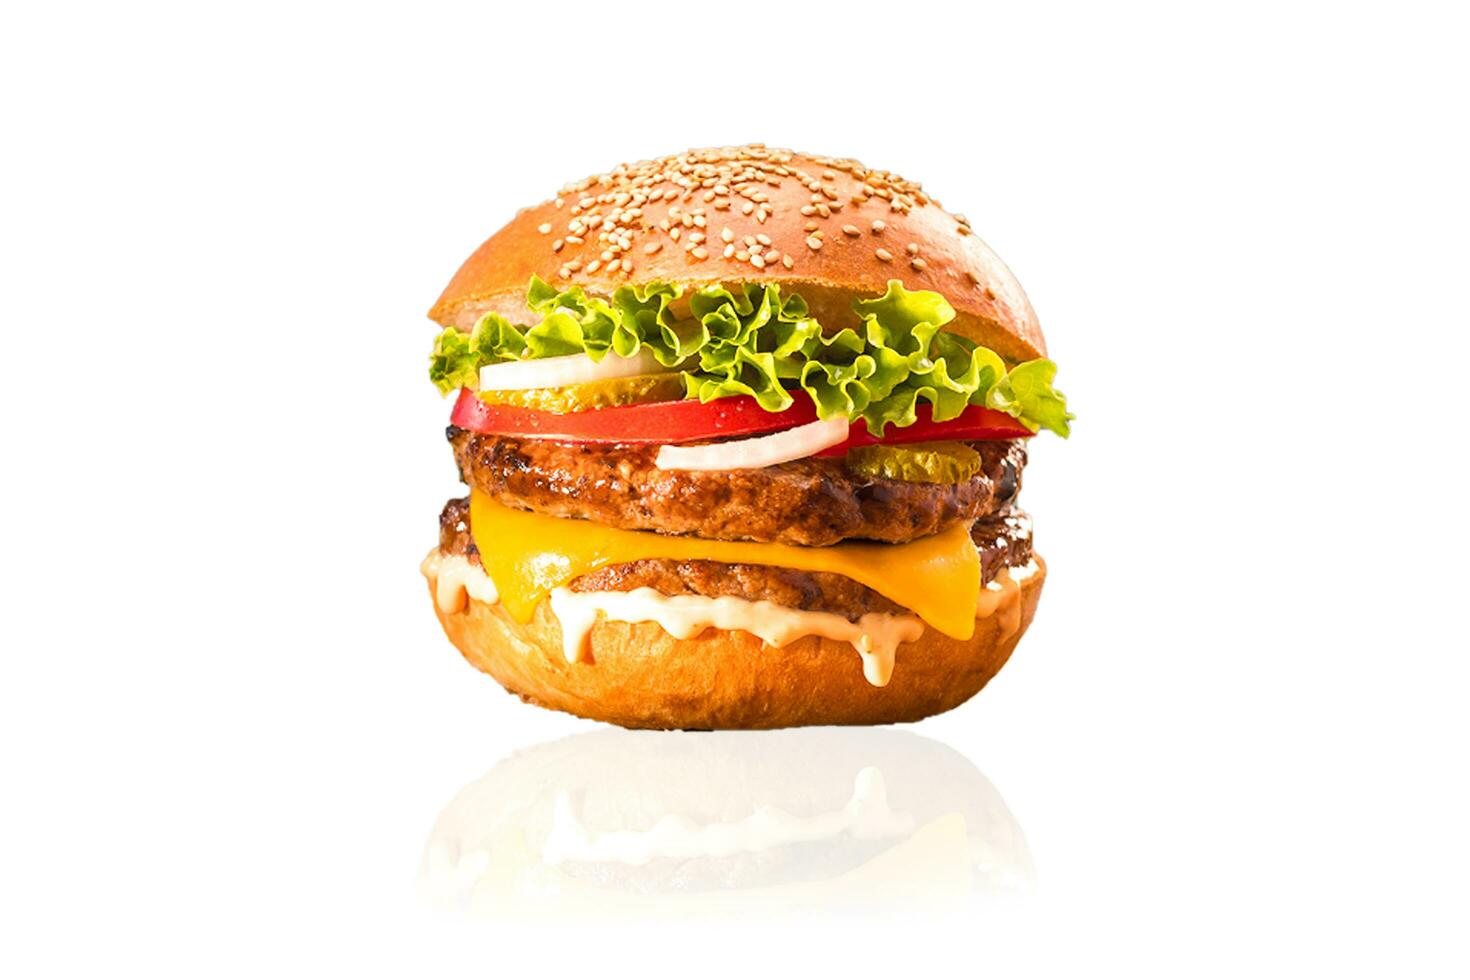 ronzio hamburger, formaggio hamburger, verdura hamburger, Fast food, Manzo hamburger, cipolla, pane, ketchup foto